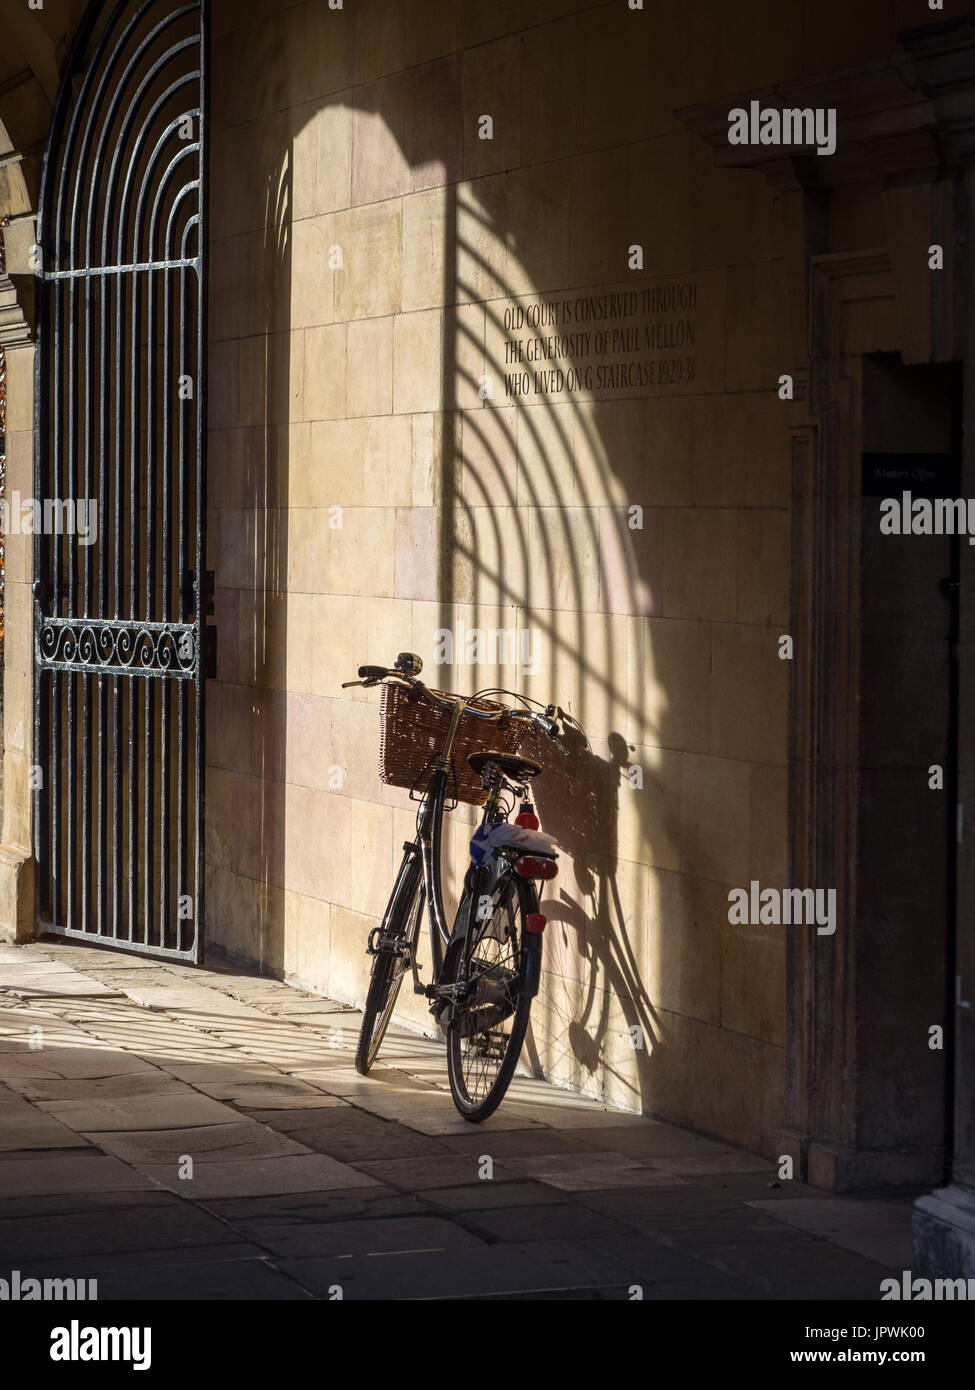 Cambridge University Student Bike - Fahrrad steht in einer Passage in Clare College, Teil der Universität von Cambridge, Großbritannien. Stockfoto